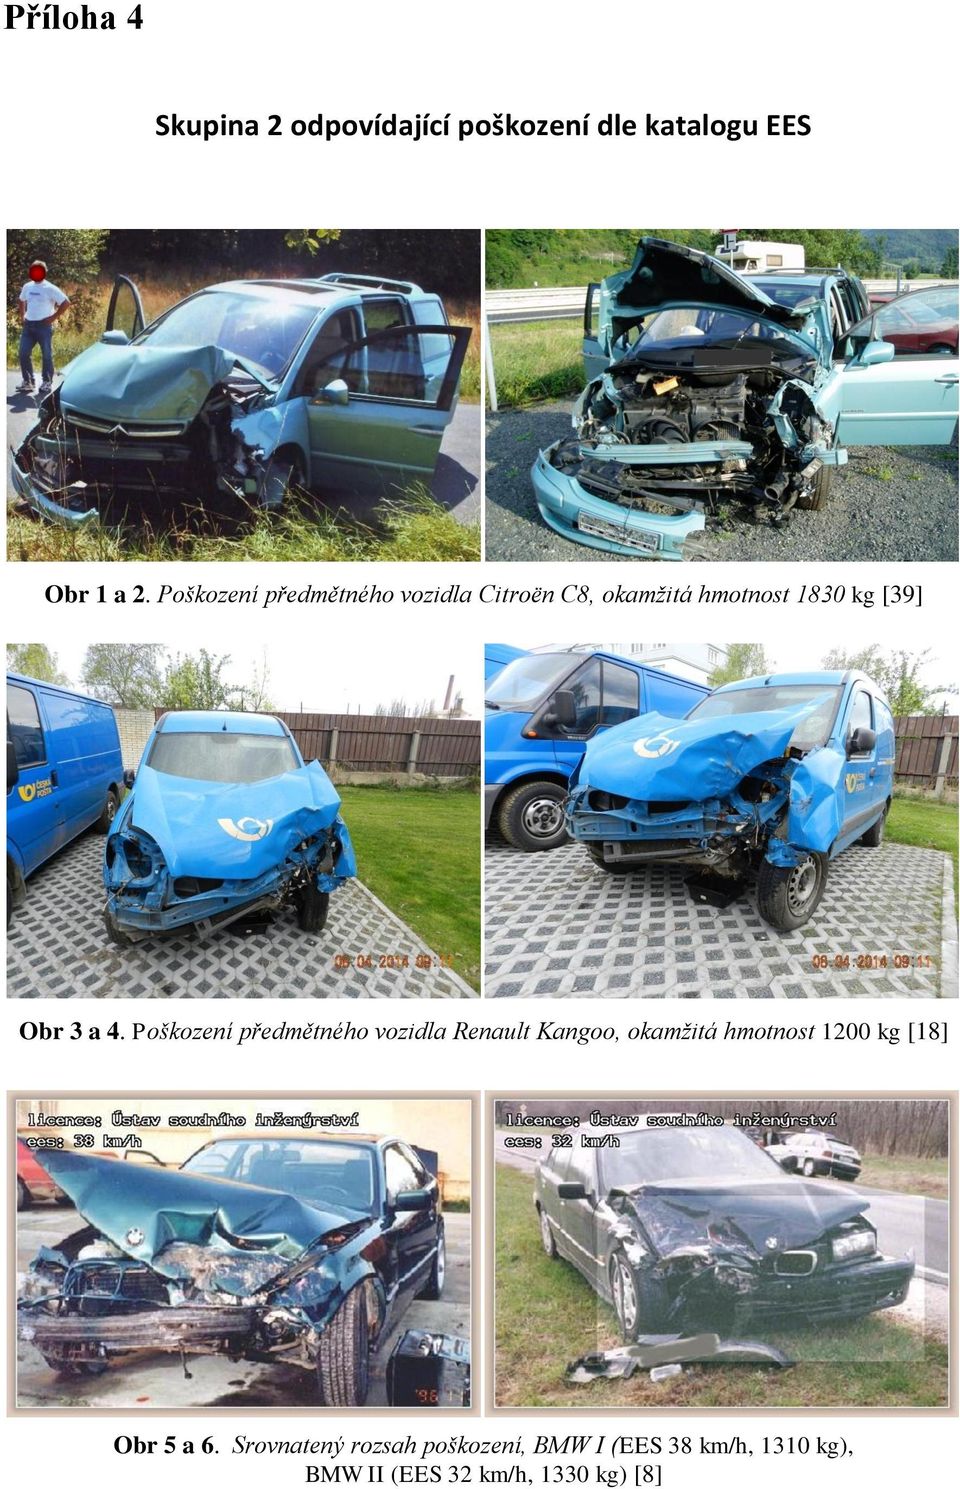 Poškození předmětného vozidla Renault Kangoo, okamžitá hmotnost 1200 kg [18] Obr 5